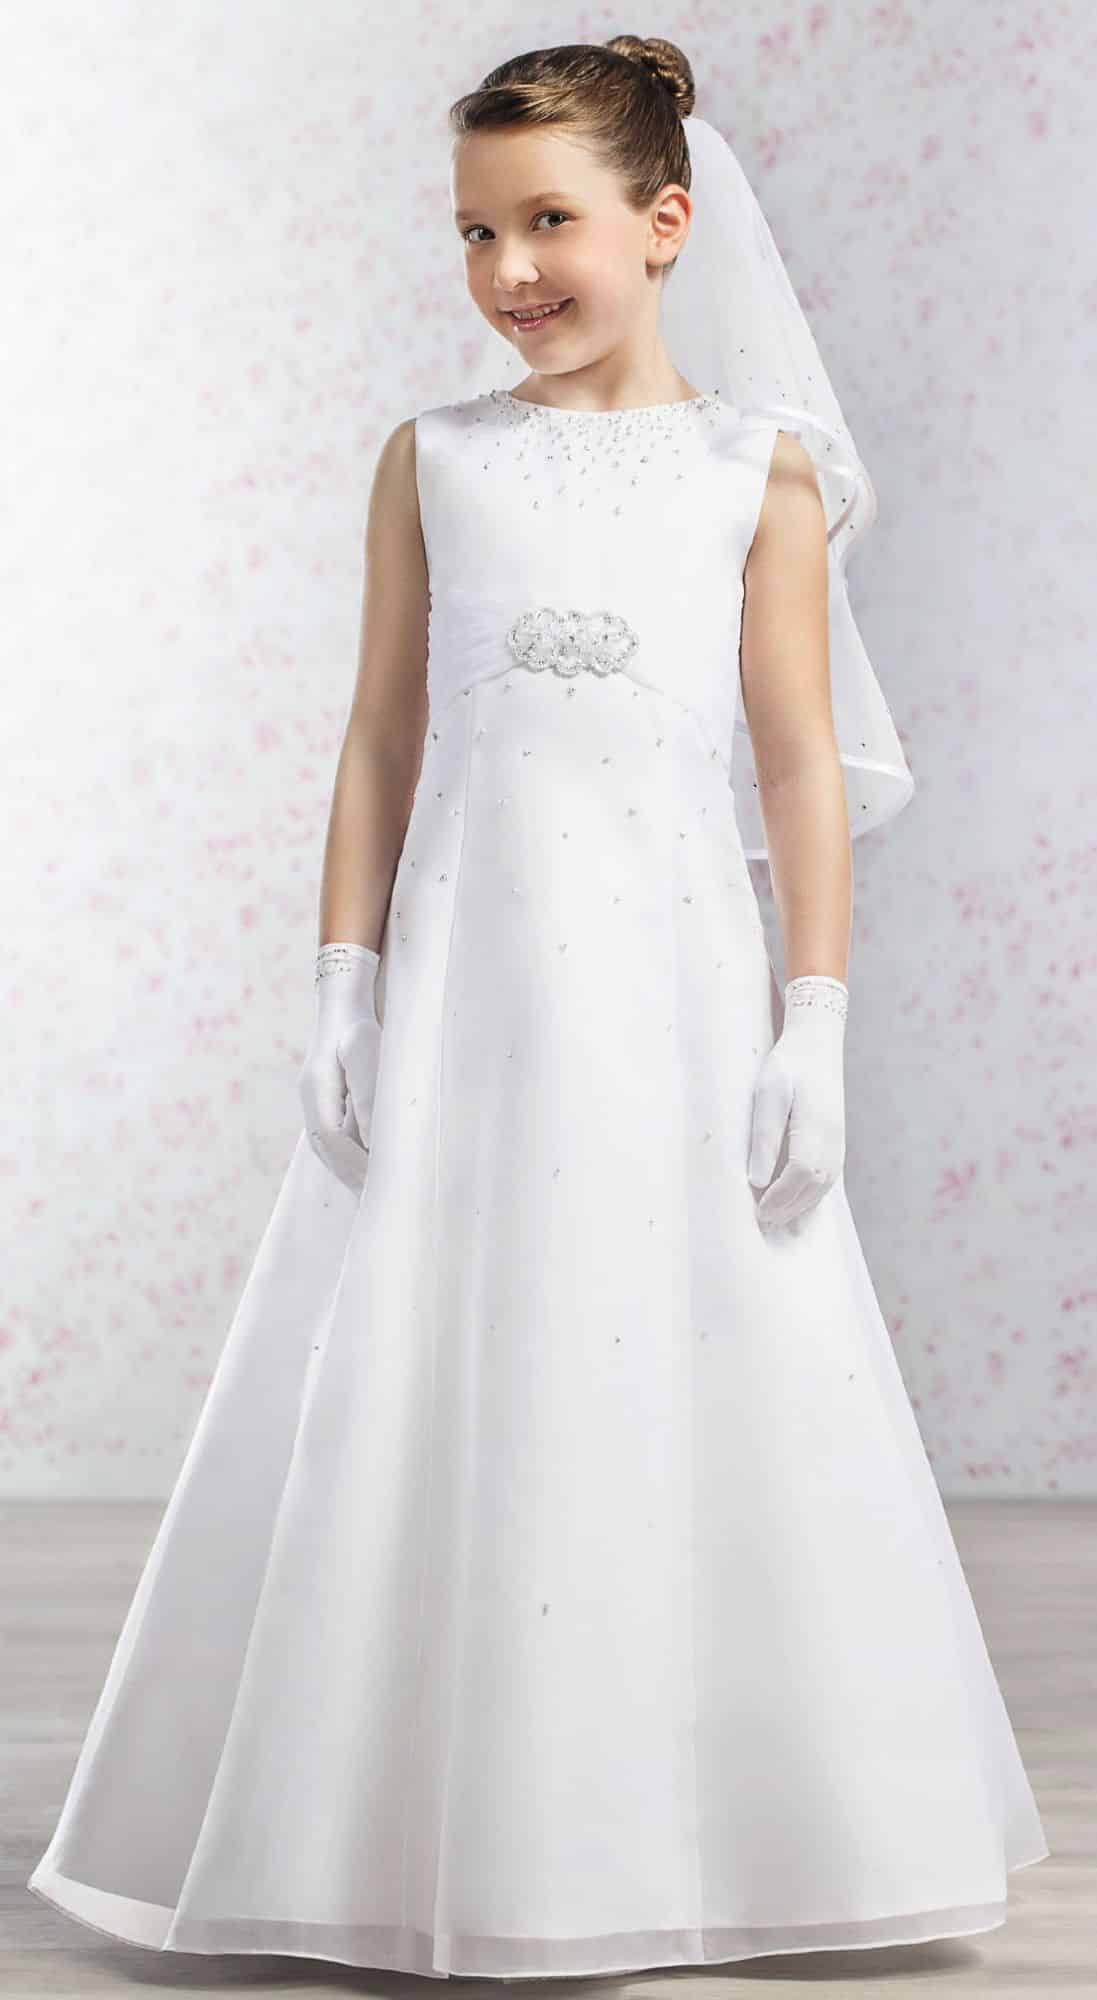 صور أجدد تصميمات لفساتين العرس للاطفال متنوعة